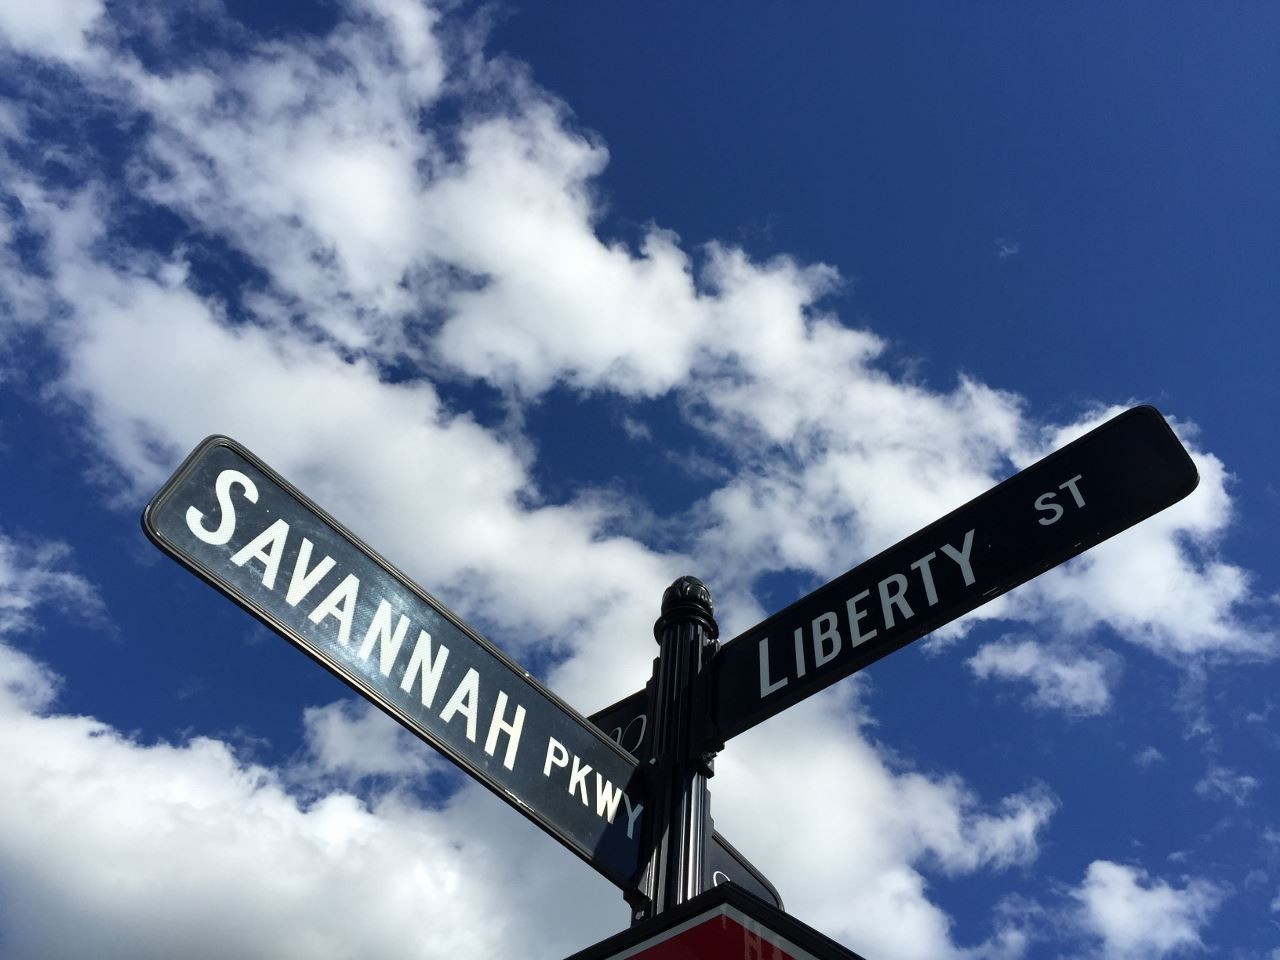 22. 174 Savannah